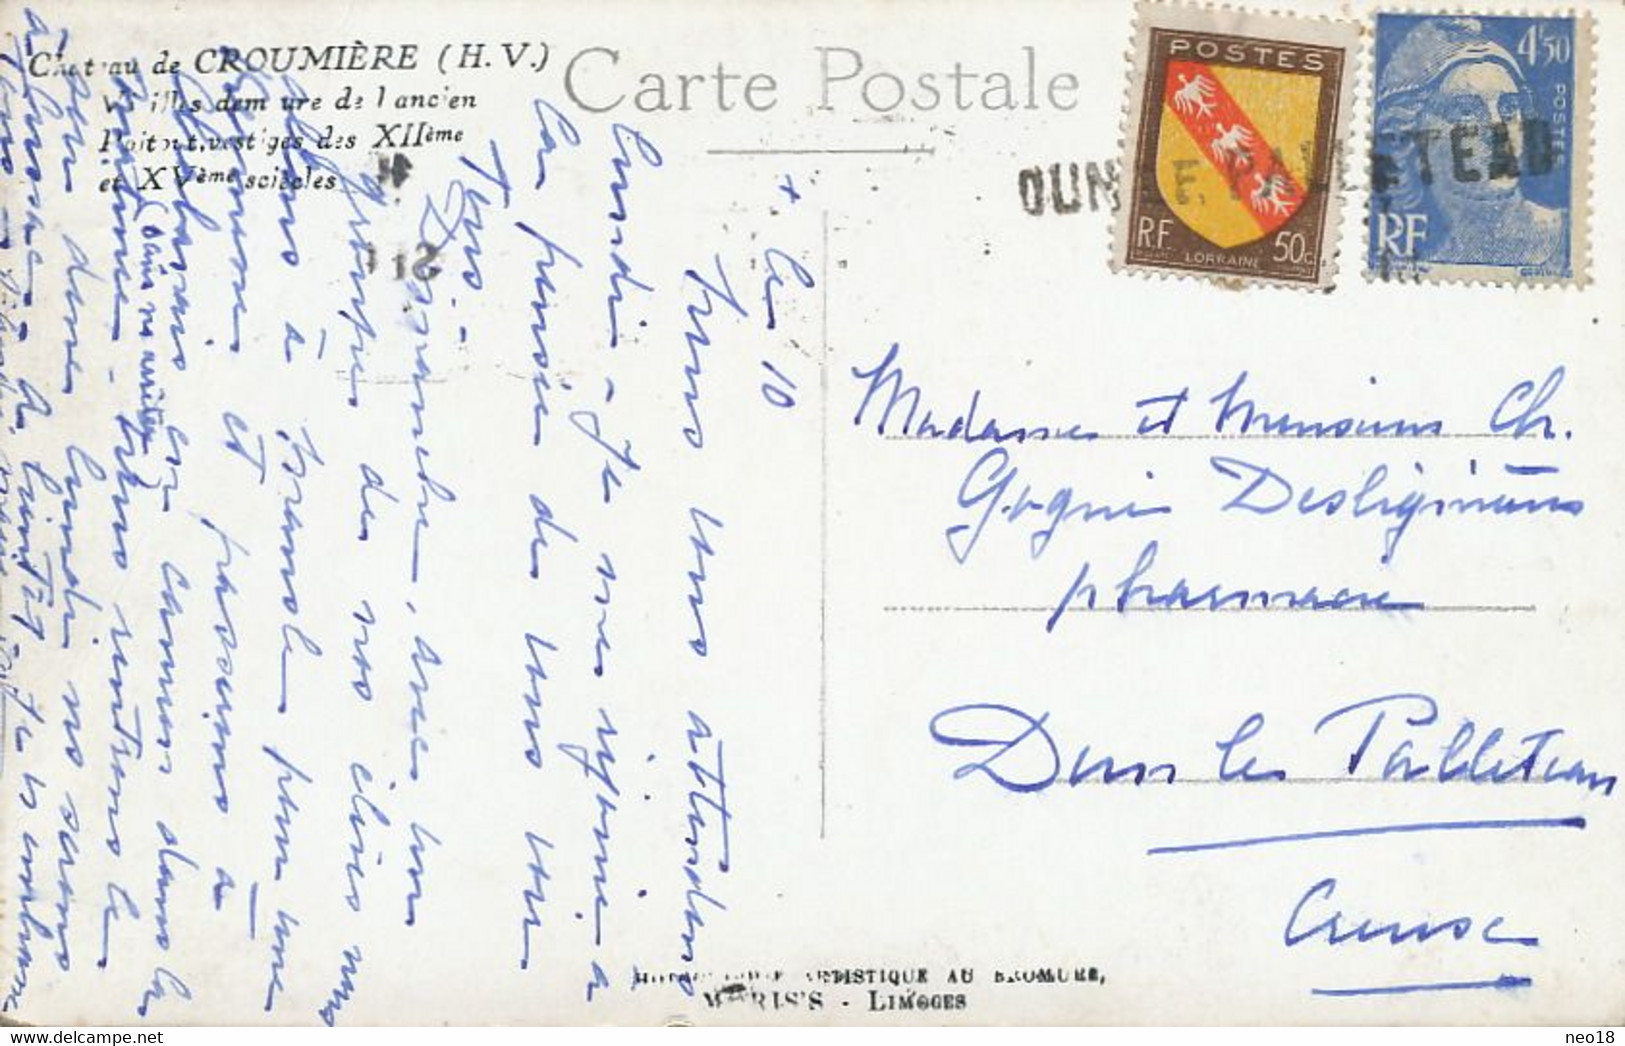 Griffe Postale De Dun Le Palleteau Sur Blason Lorraine Et Mariane Gandon Chateau Croumiere - Dun Le Palestel